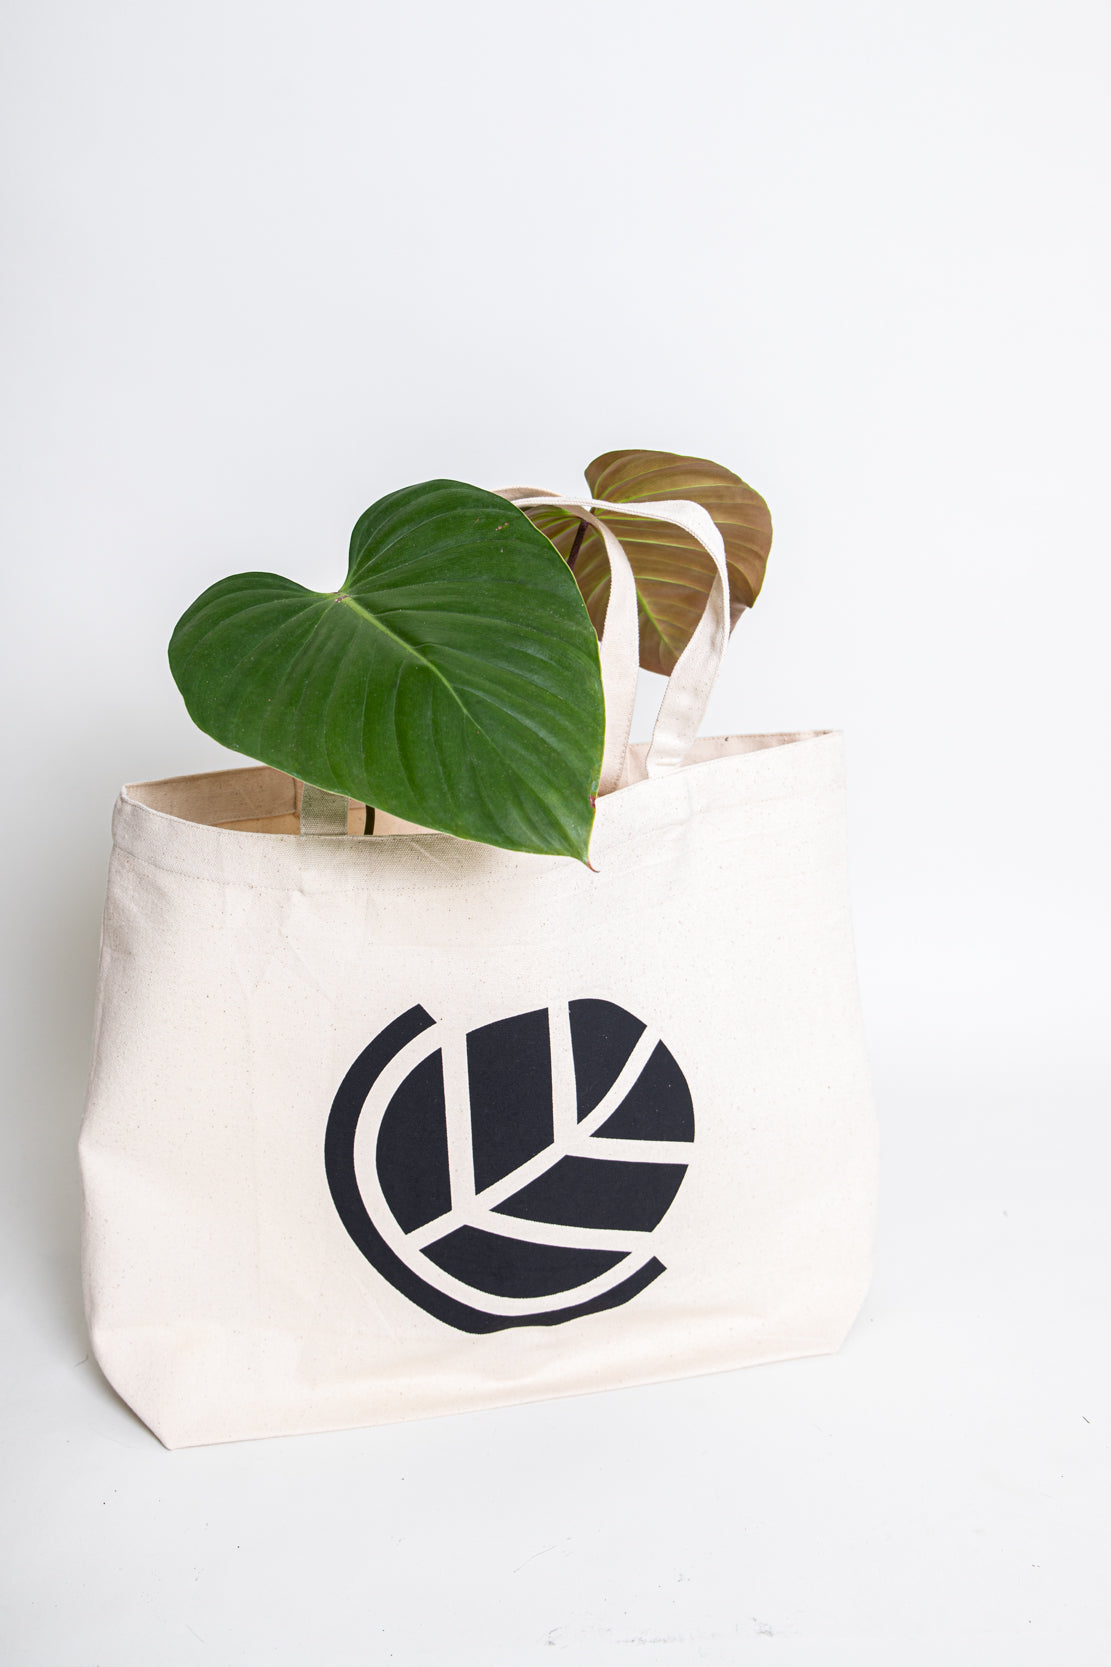 Organic Tote Bag - Downtown Plant Club